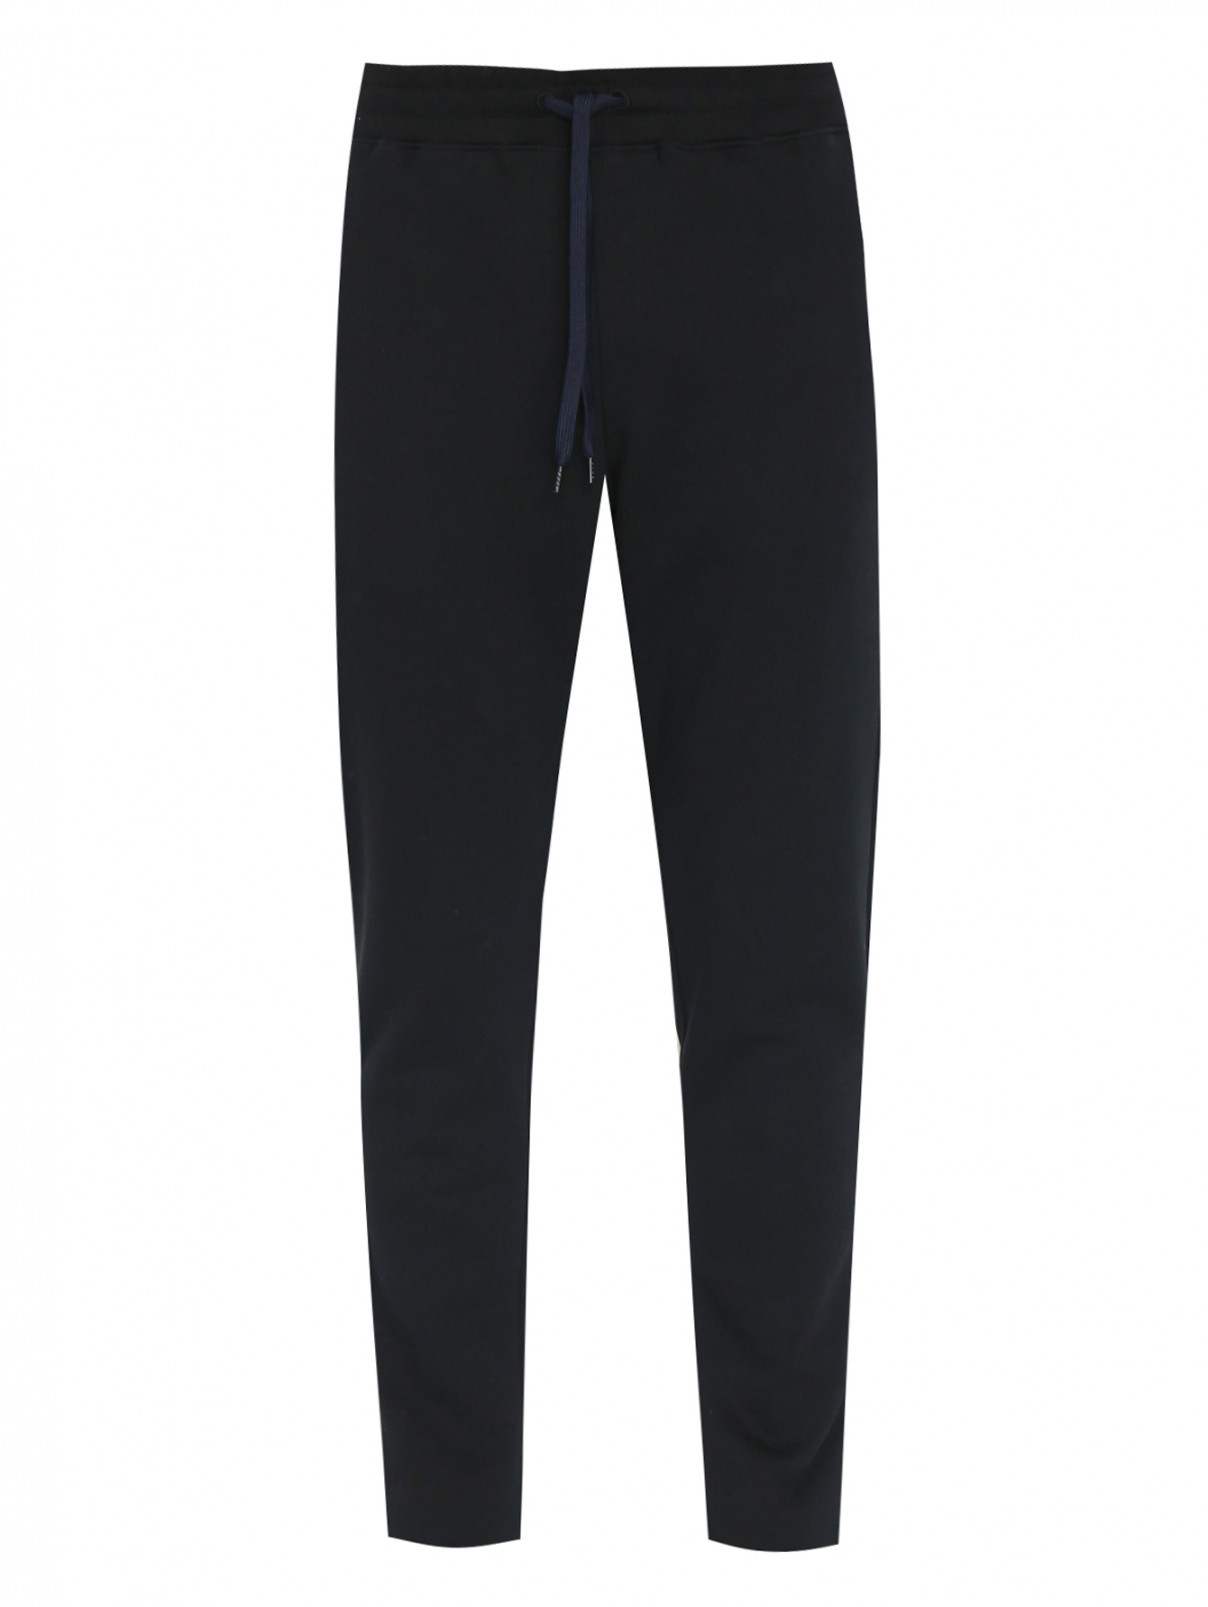 Трикотажные брюки из хлопка с карманами Paul Smith  –  Общий вид  – Цвет:  Черный